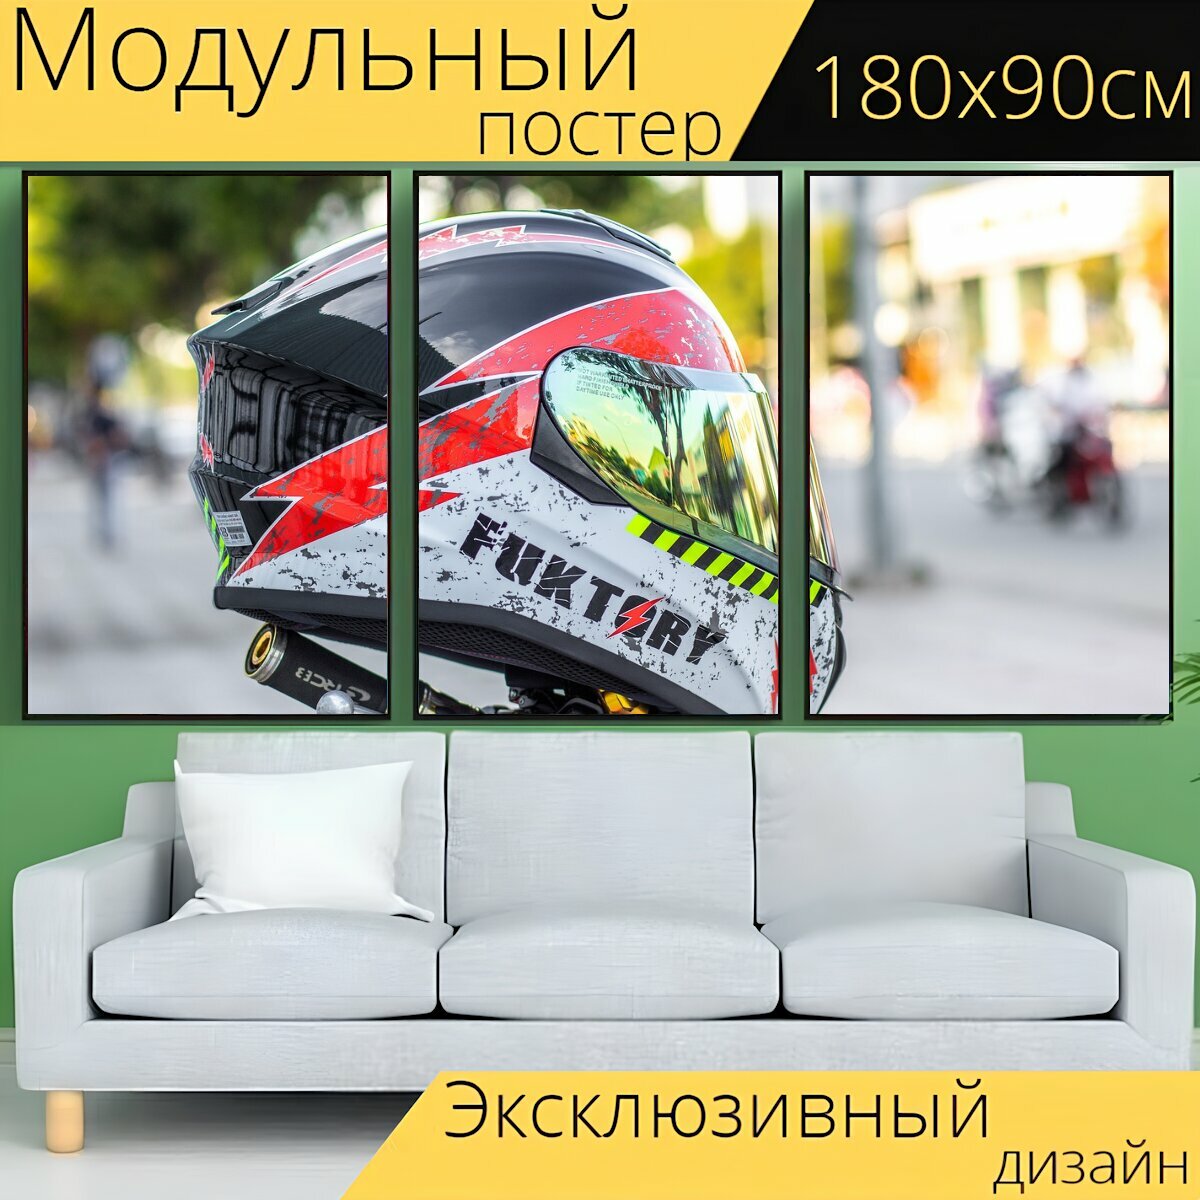 Модульный постер "Шлемы, мотоциклетные шлемы, шлем" 180 x 90 см. для интерьера